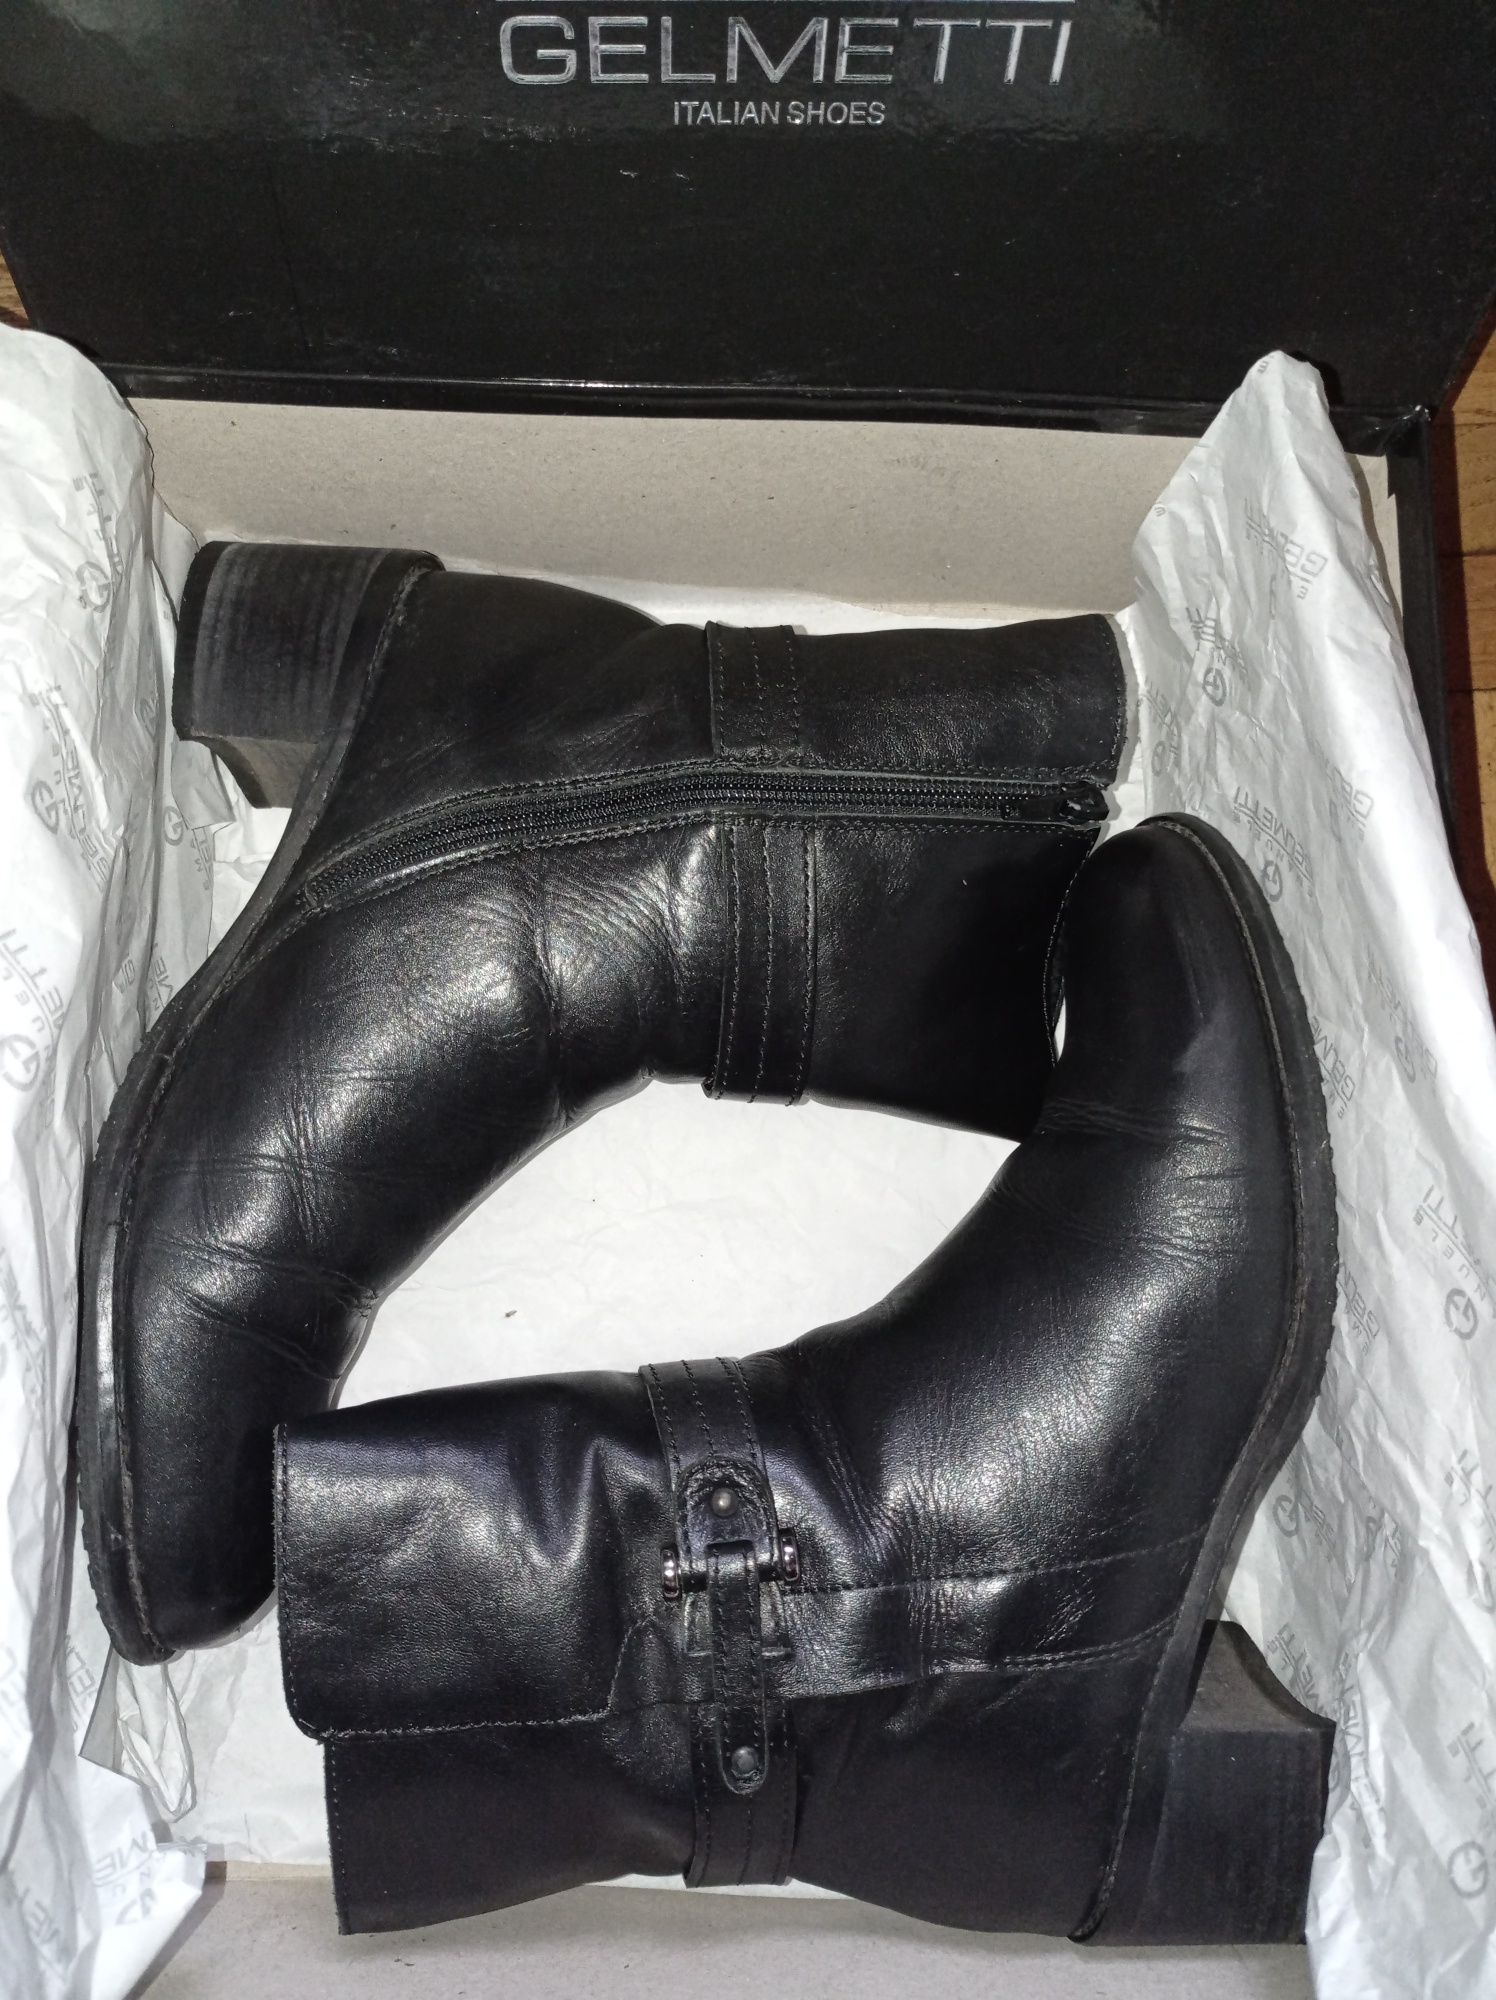 Полусапожки ботинки Gelmetti, р.37, 24 см,Италия,черные,кожа,мех натур